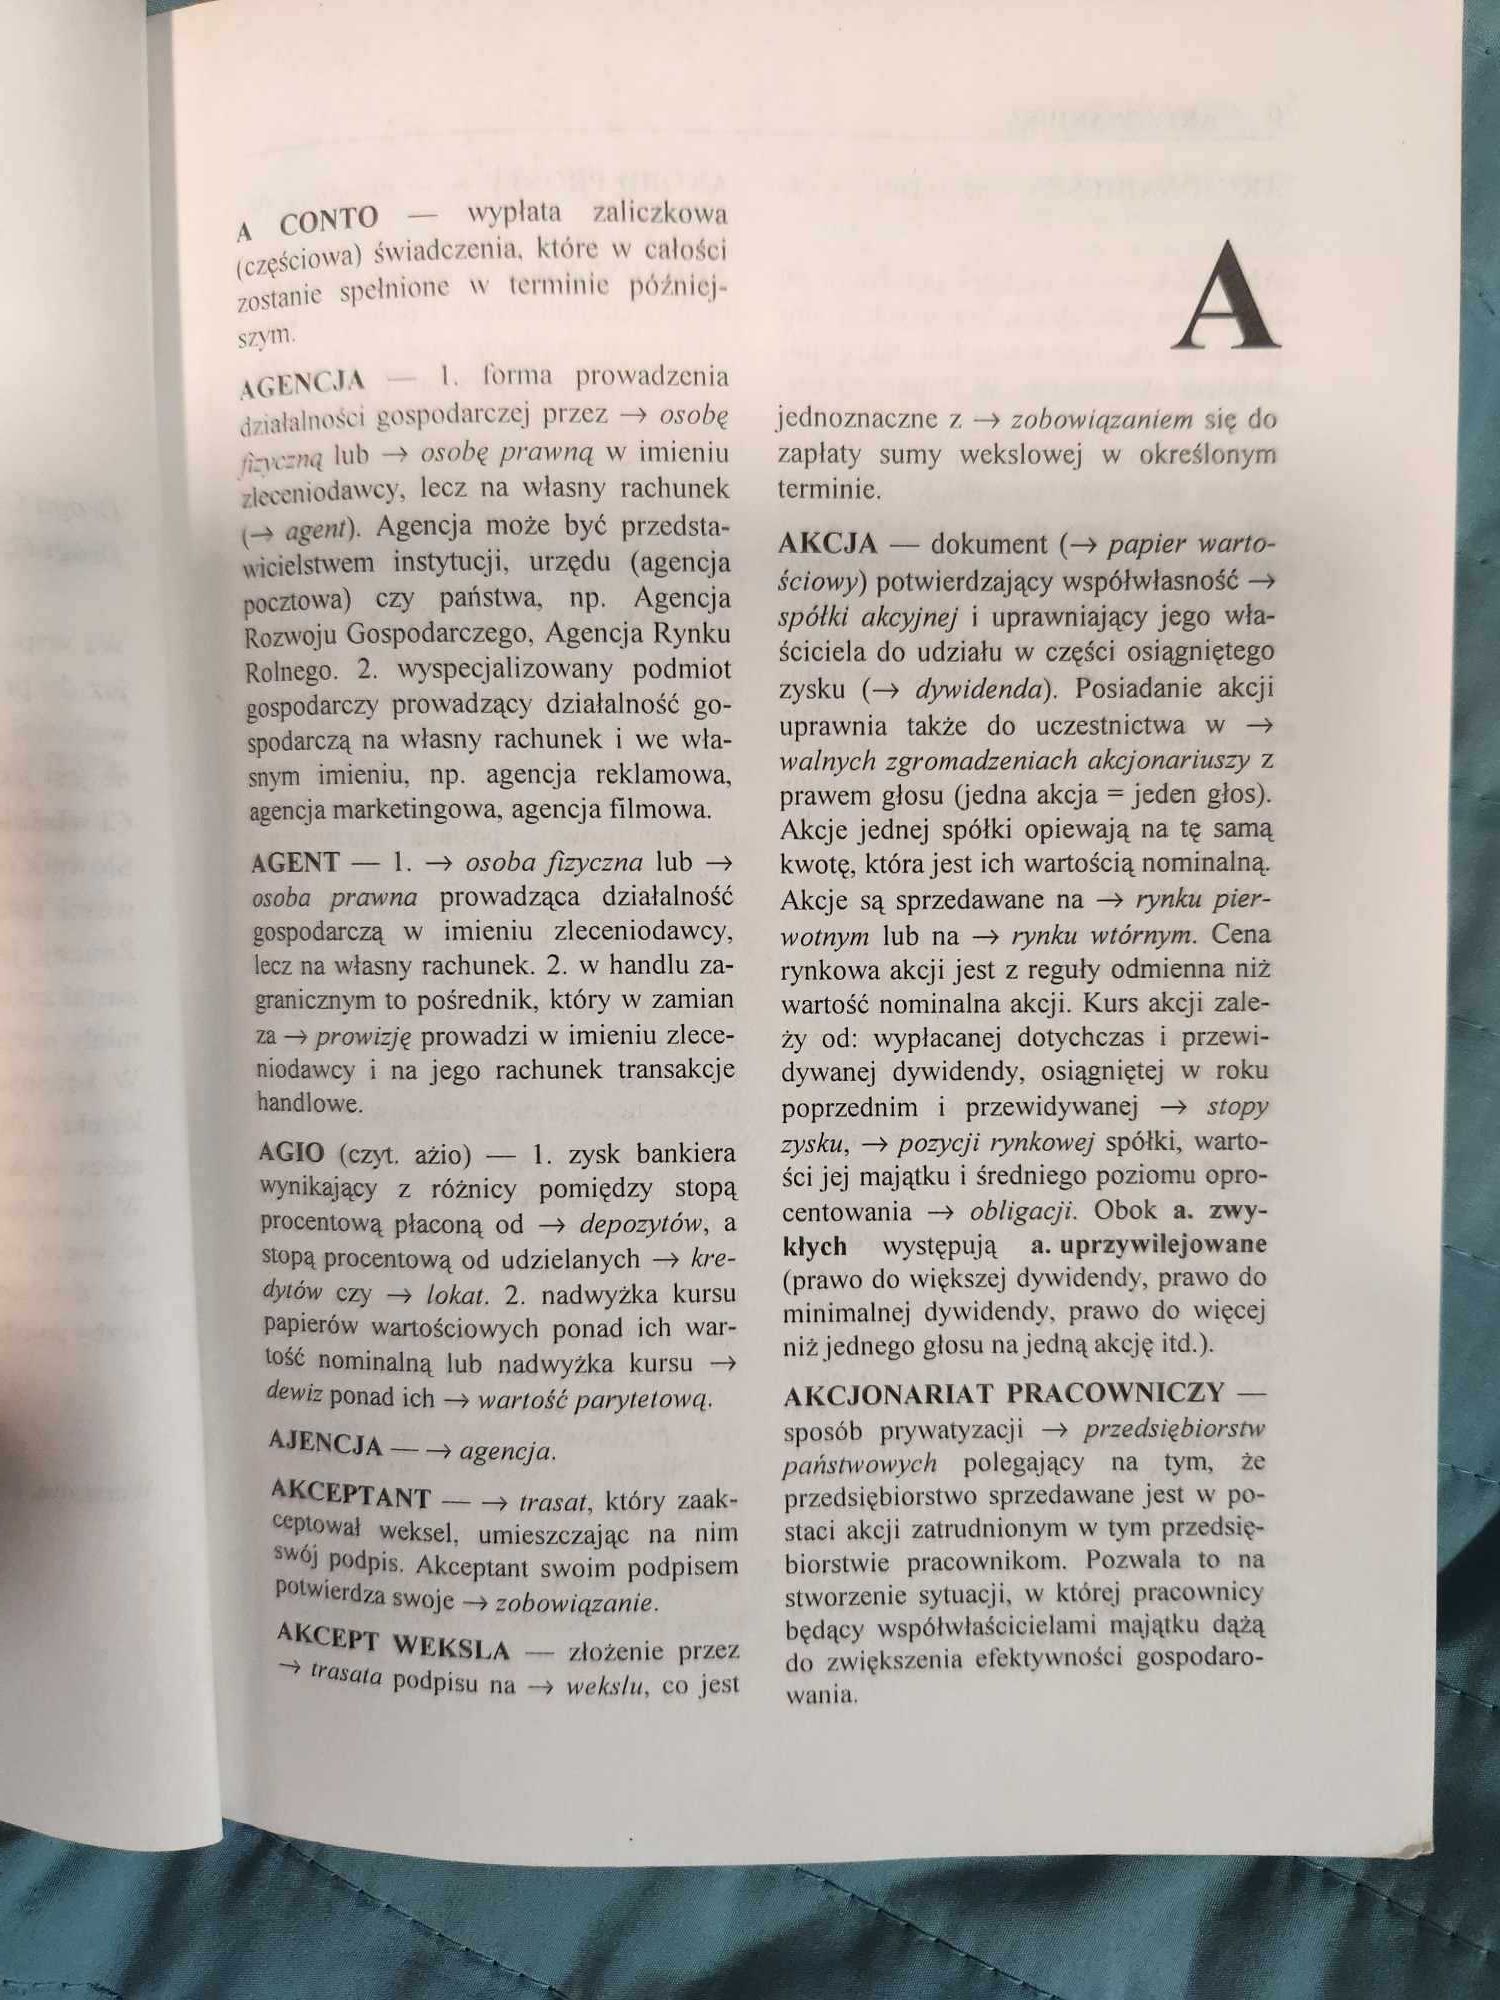 Szkolny słownik ekonomiczny Komosa 1998